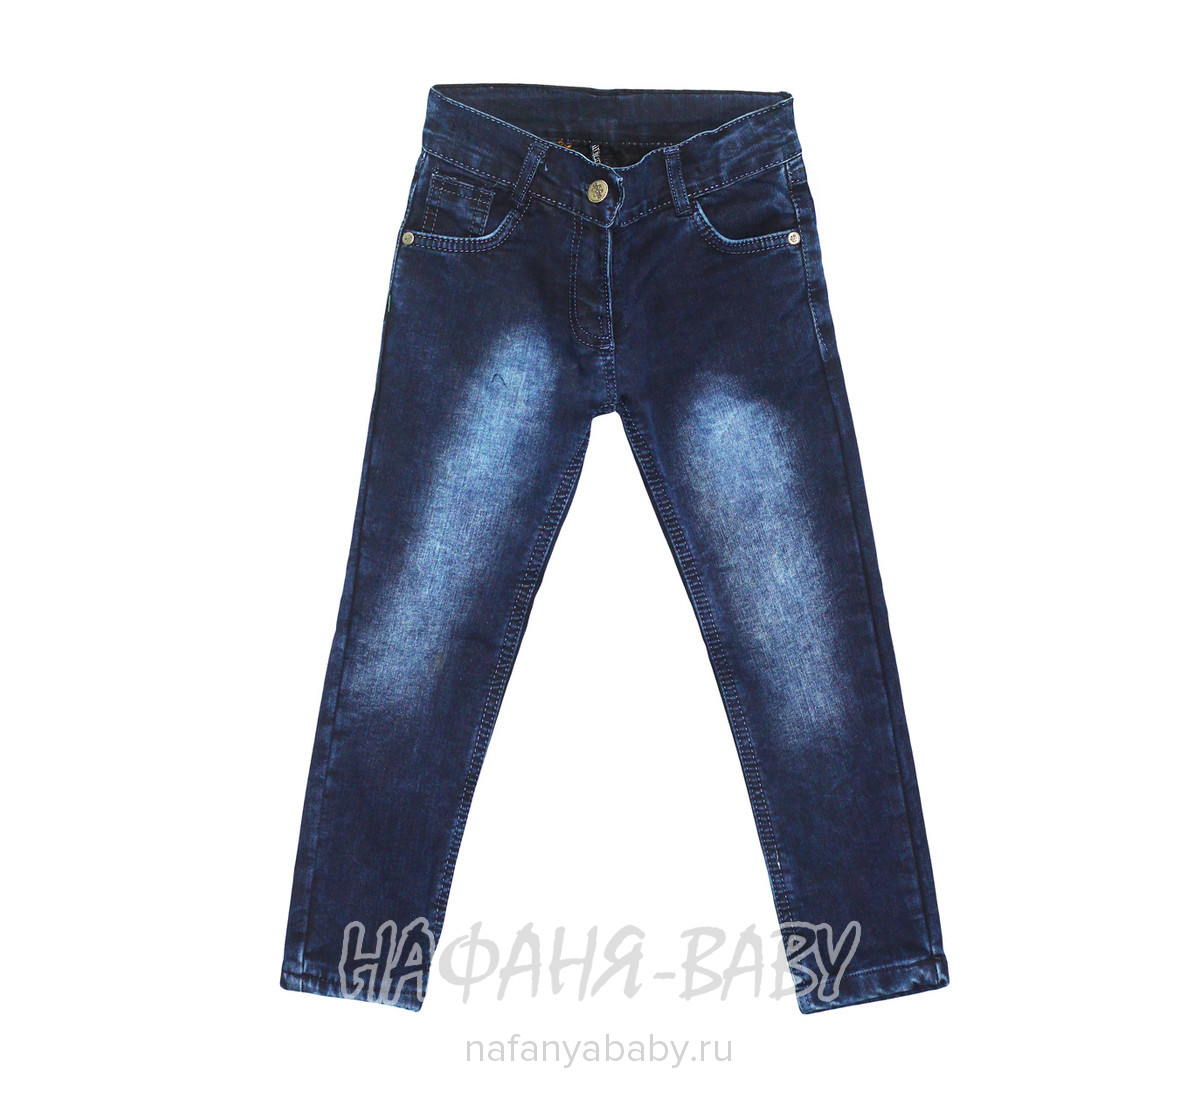 Детские джинсы SERCINO, купить в интернет магазине Нафаня. арт: 52032.